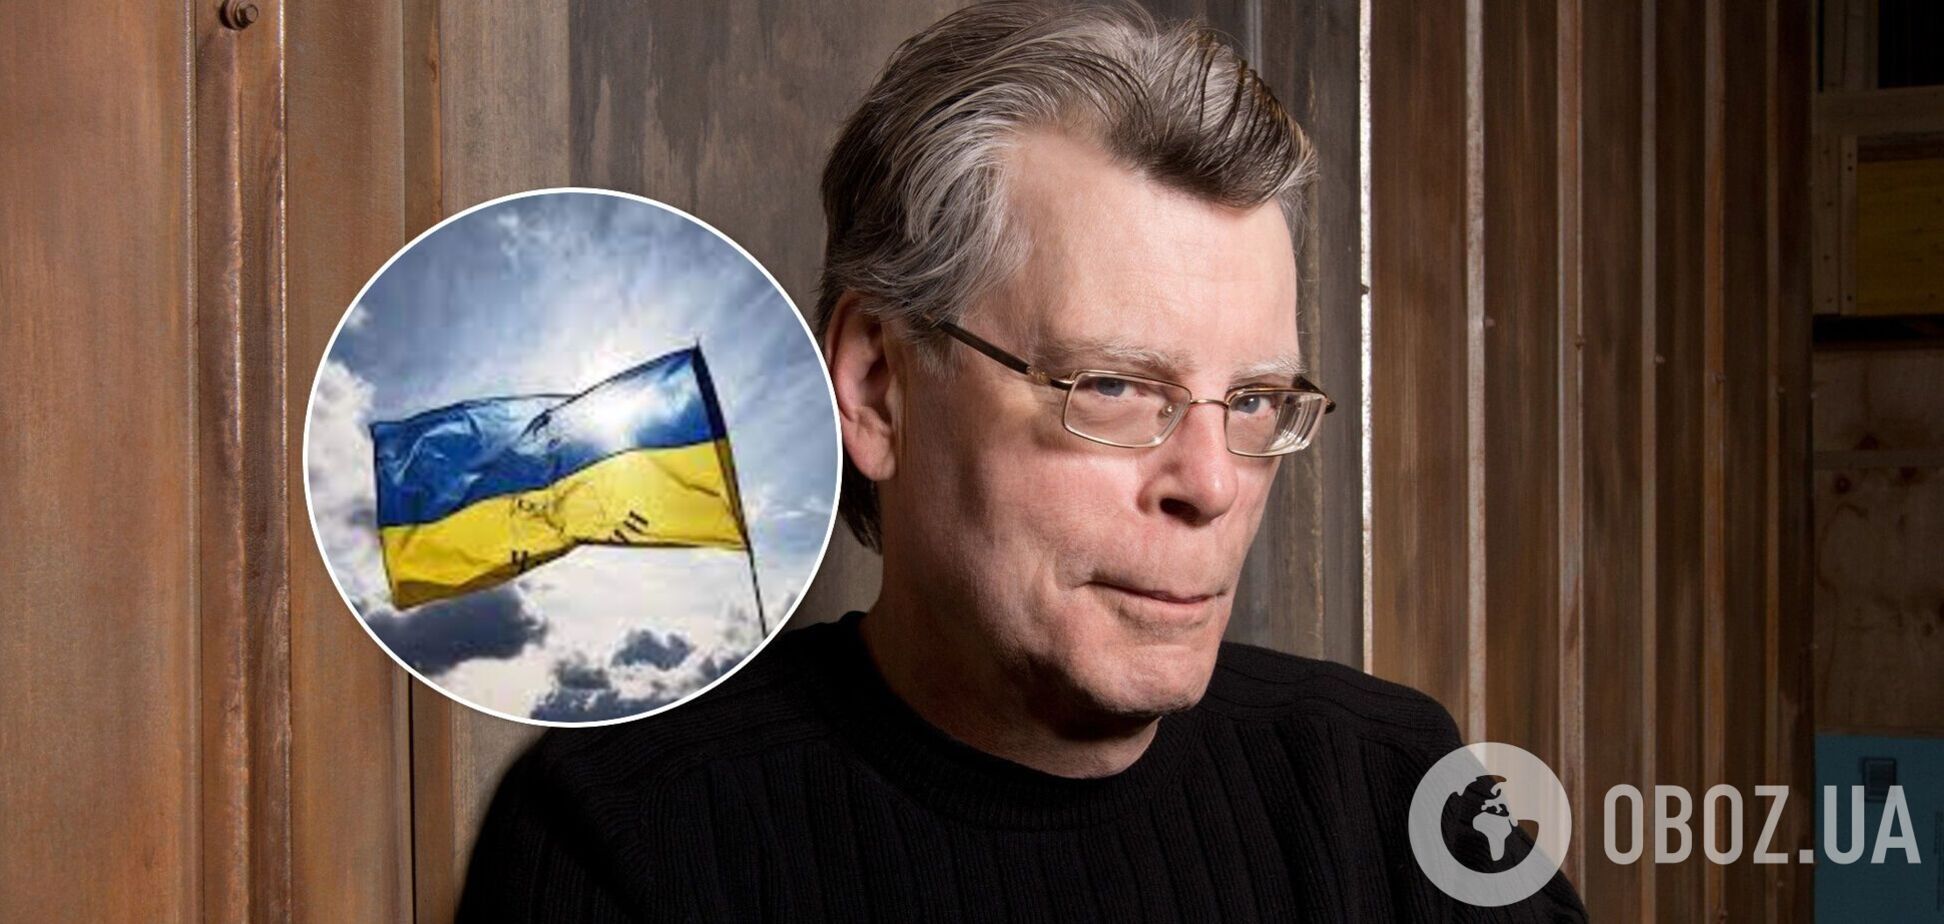 Стівен Кінг заявив, що розриває співпрацю з РФ: на своїй сторінці він розмістив показове фото з українкою